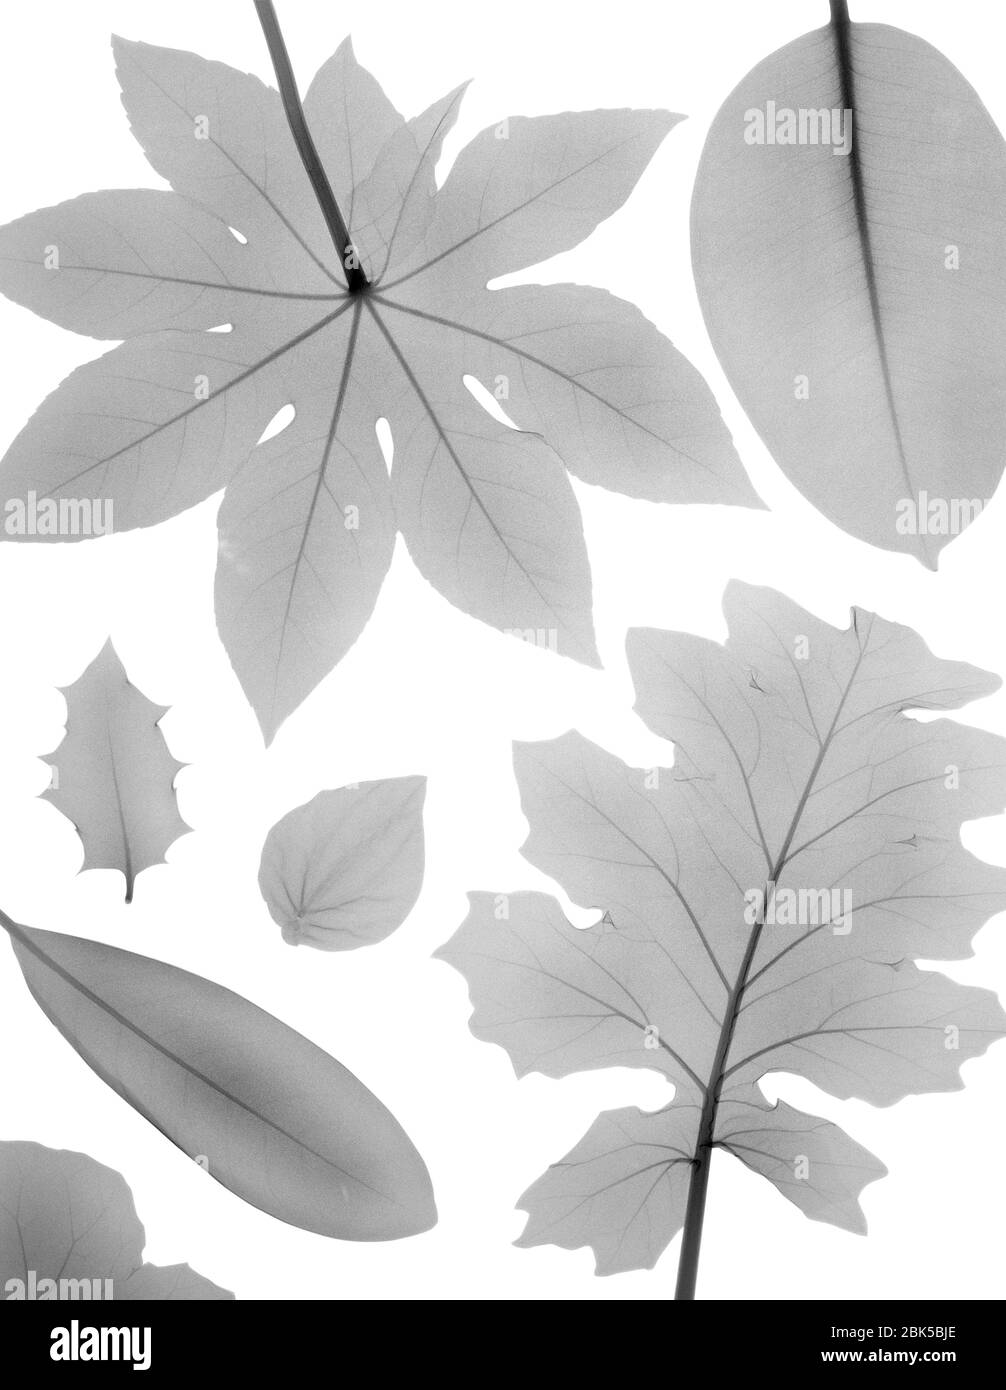 Variedad de hojas en forma, rayos X. Foto de stock